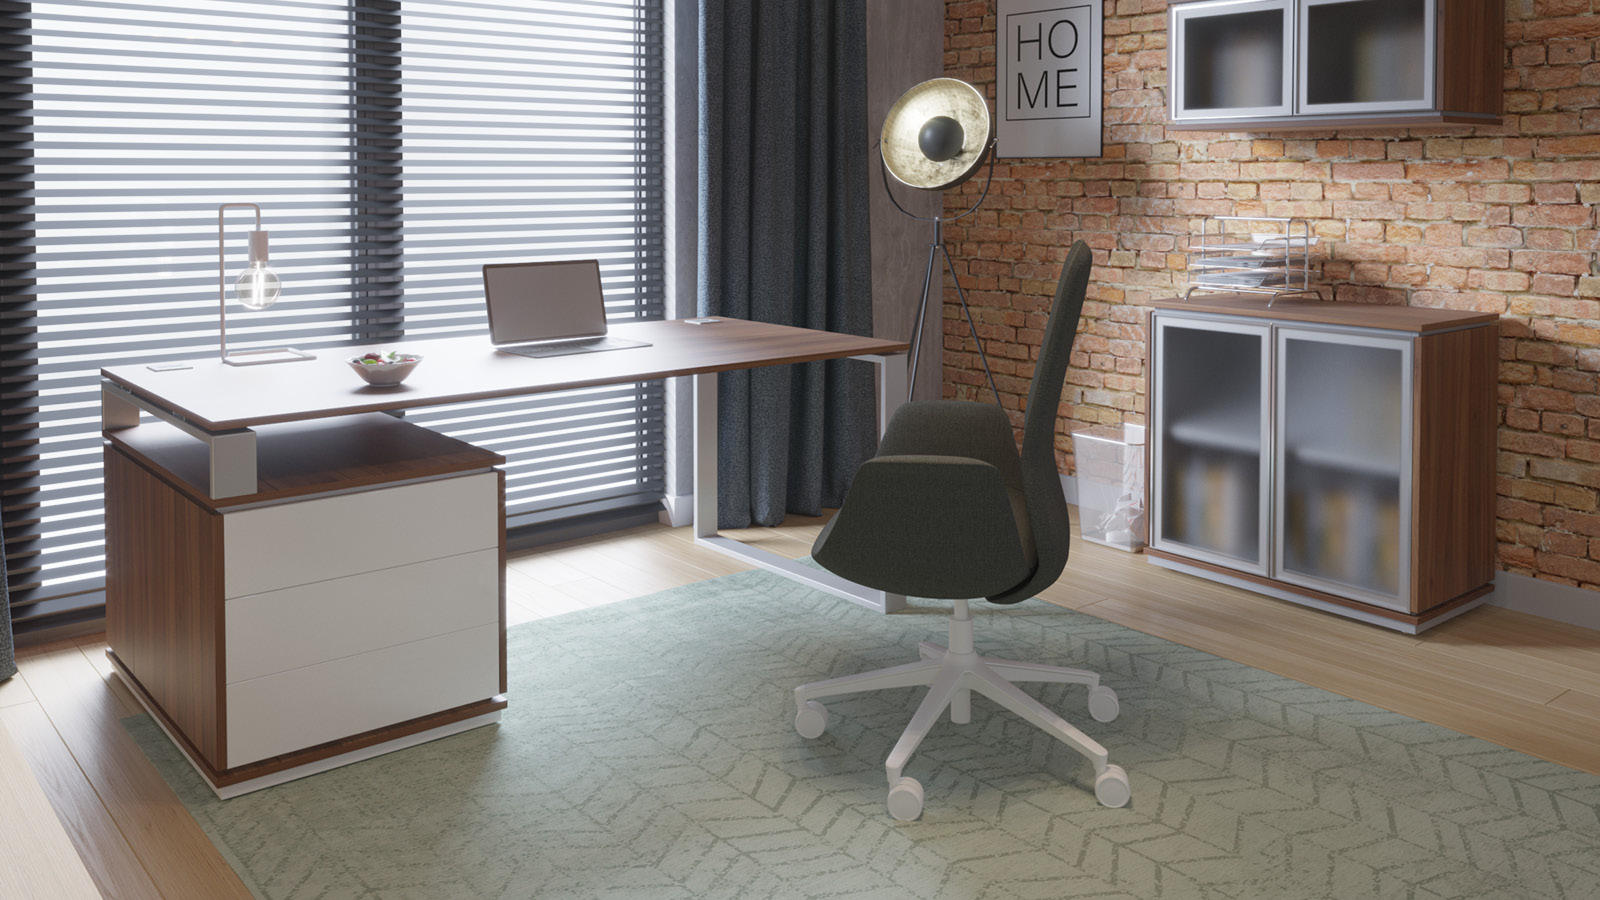 Minimalistyczne stanowisko pracy w domu wyposażone w jasne biurko na komodzie, kubełkowy fotel i szafę ze szklanym frontem.